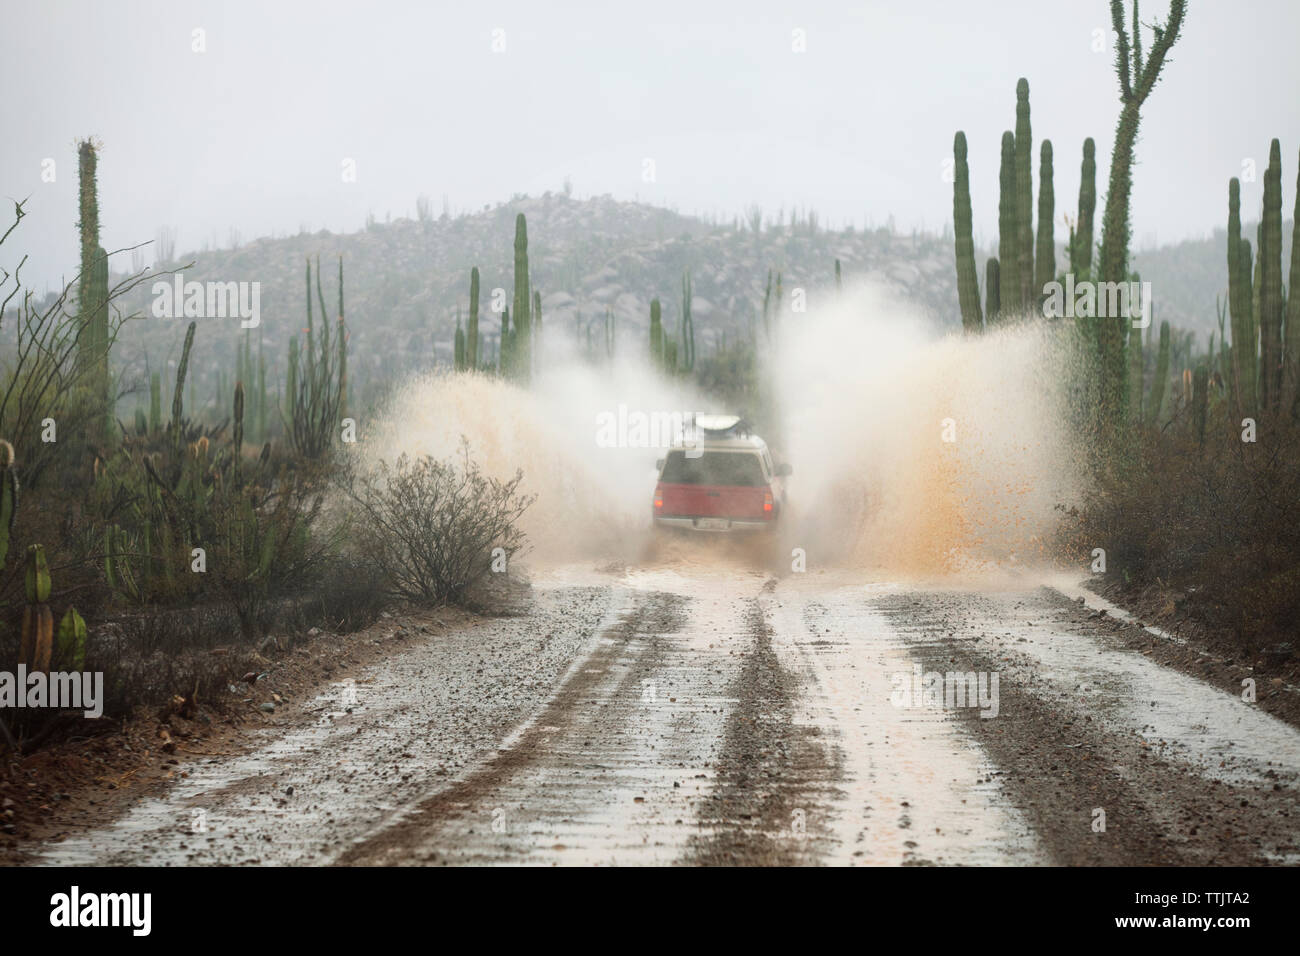 Location de projections d'eau sur chemin de terre humide au milieu de cactus sur terrain contre ciel lors de temps de brouillard Banque D'Images